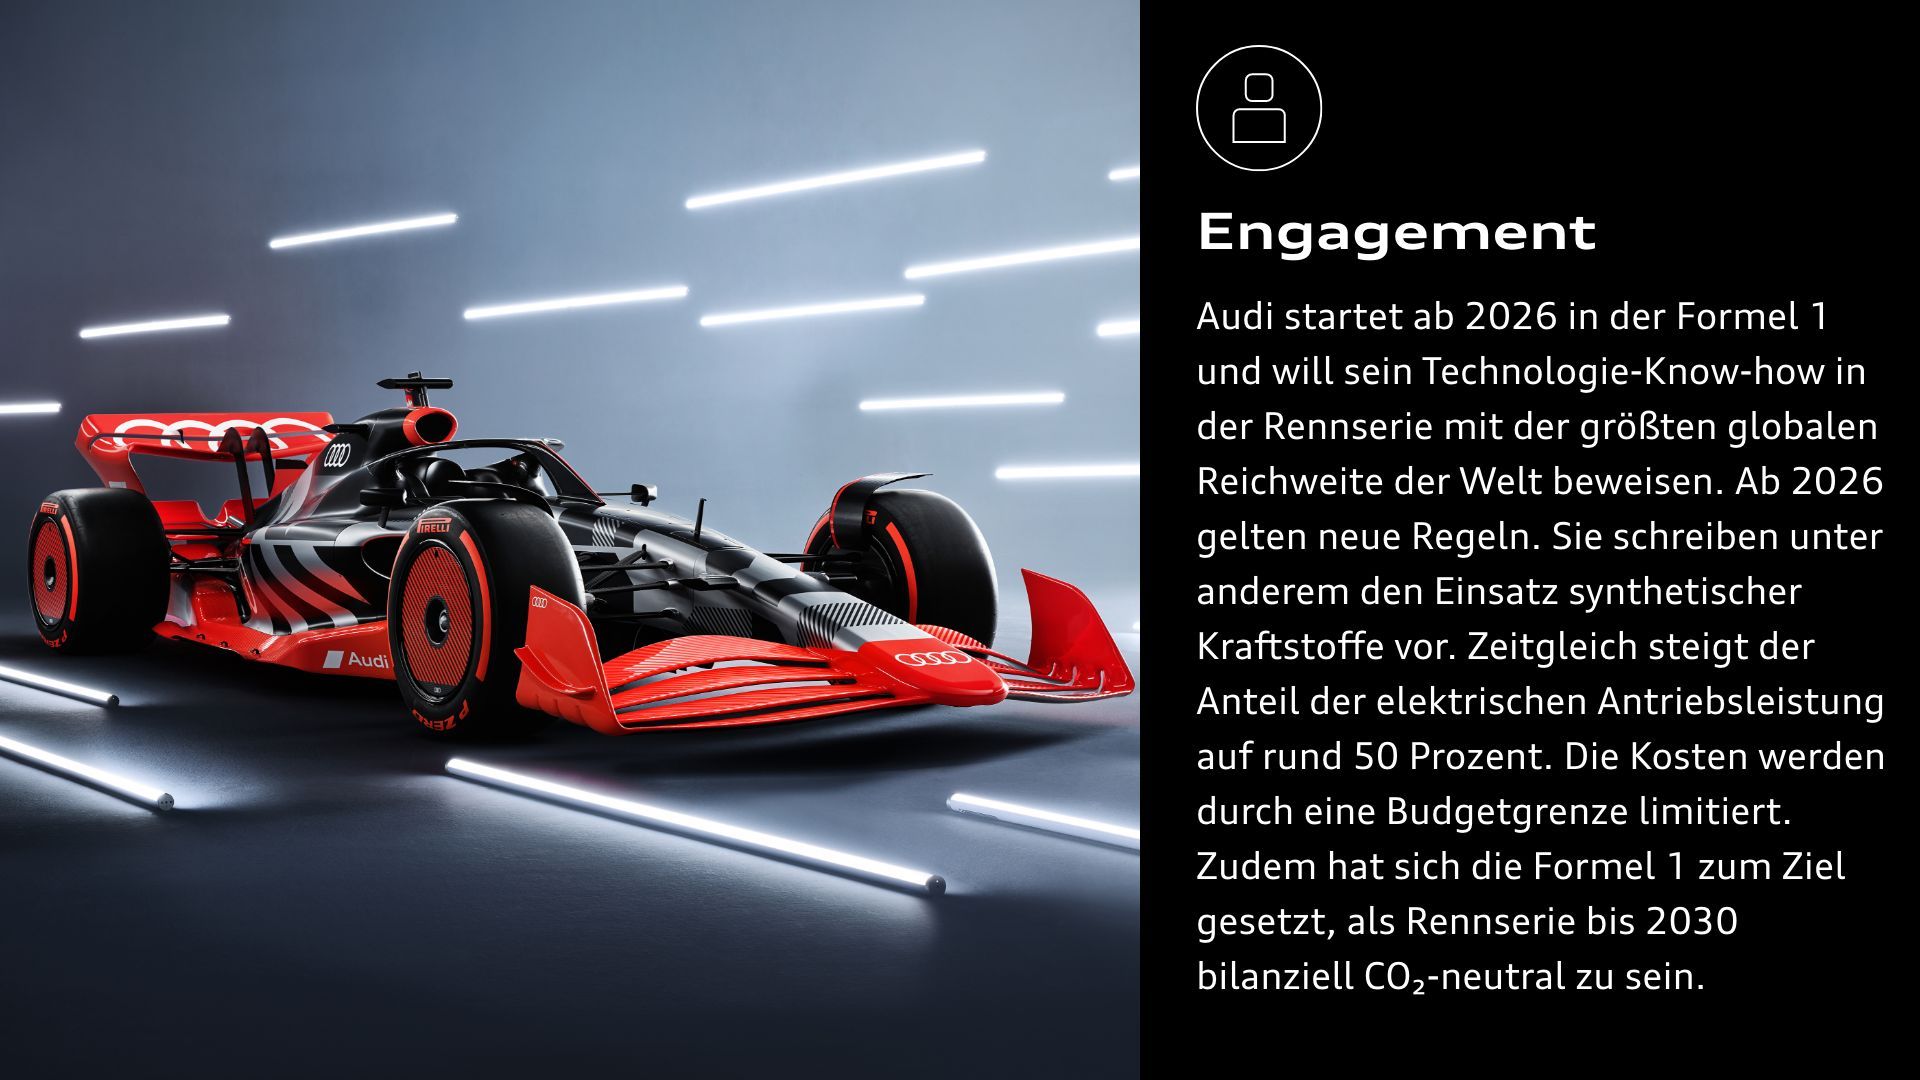 Engagement: Audi startet ab 2026 in der Formel 1 und will sein Technologie-Know-how in der Rennserie mit der größten globalen Reichweite der Welt beweisen. Ab 2026 gelten neue Regeln. Sie schreiben unter anderem den Einsatz synthetischer Kraftstoffe vor. Zeitgleich steigt der Anteil der elektrischen Antriebsleistung auf rund 50 Prozent. Die Kosten werden durch eine Budgetgrenze limitiert. Zudem hat sich die Formel 1 zum Ziel gesetzt, als Rennserie bis 2030 bilanziell CO₂-neutral zu sein.